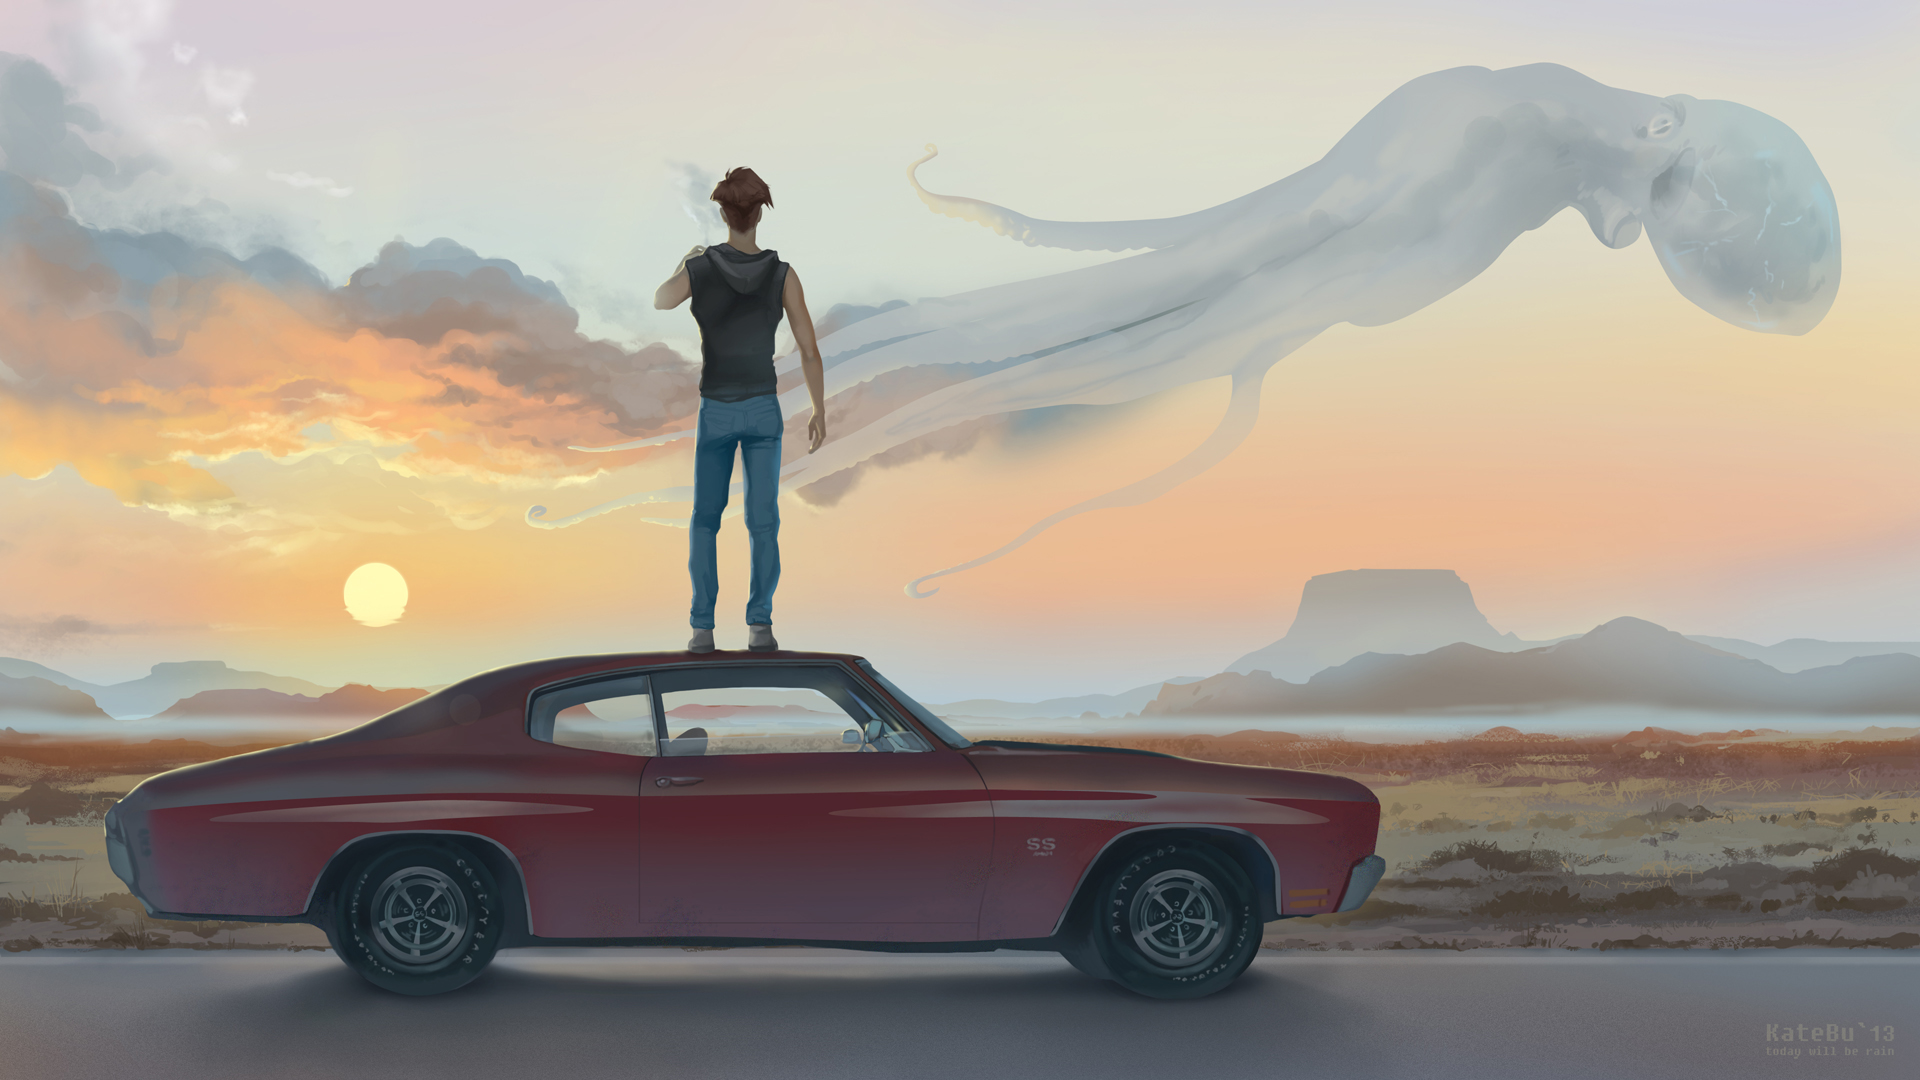 Фото Мужчина стоит на машине, смотря на превращающиеся в осьминогов облака, художник katebu